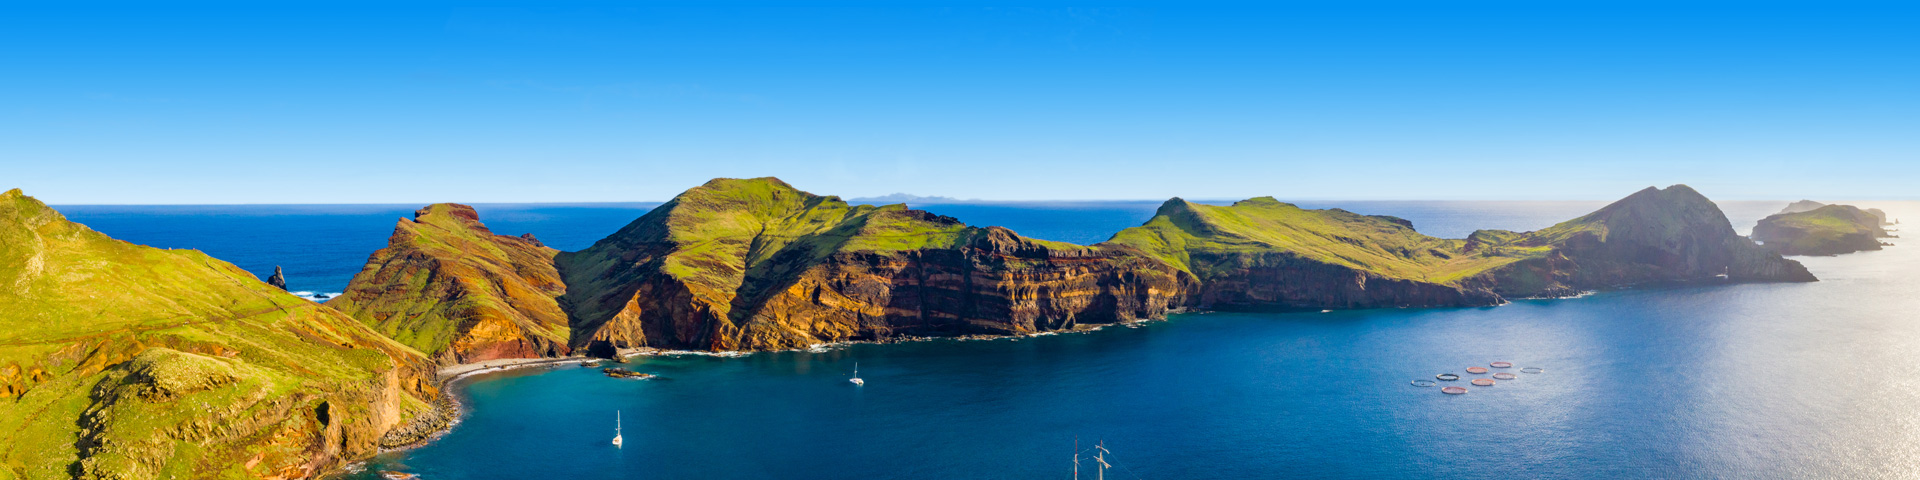 Alle last minute vakanties naar Madeira bij Prijsvrij Vakanties